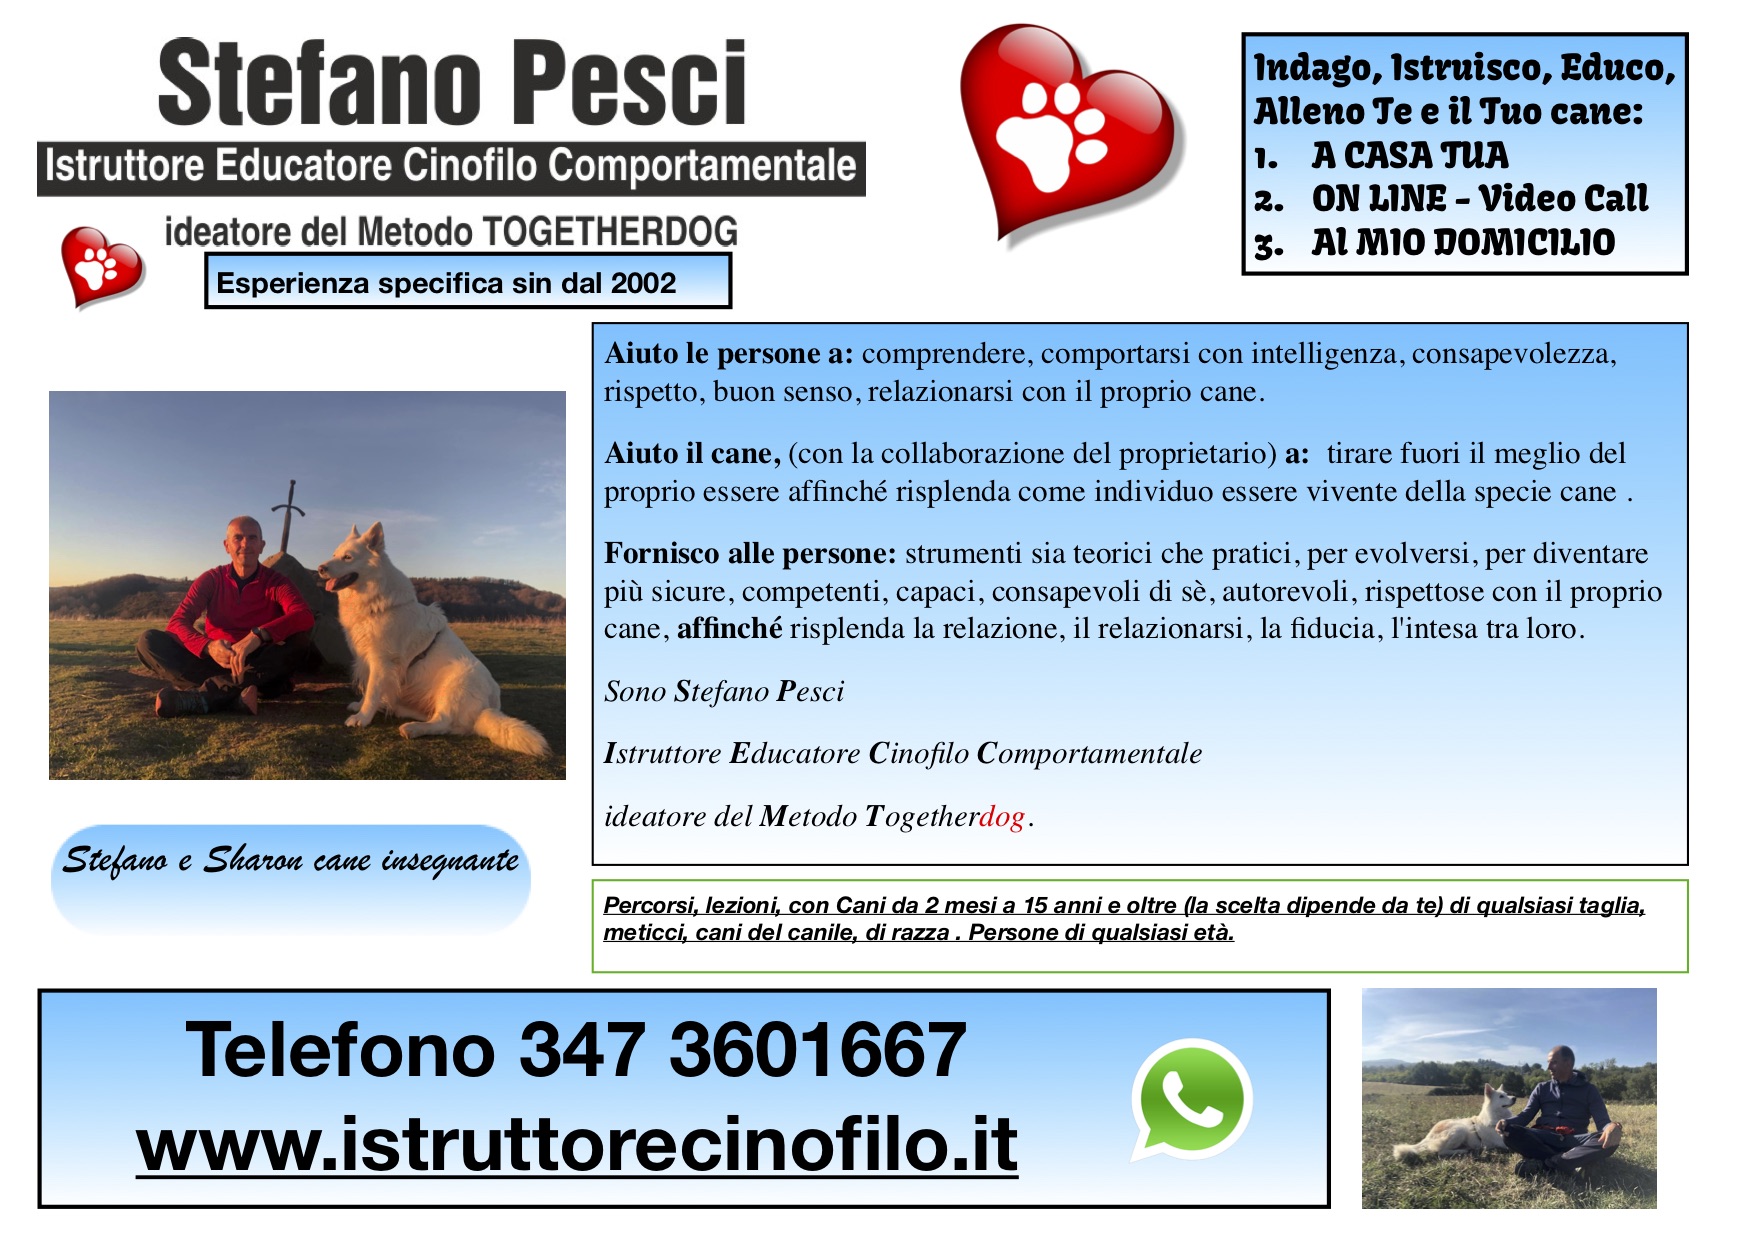 Aiuto Perosne cani stefano Pesci istruttore Educatore Cinofilo Comportamentale